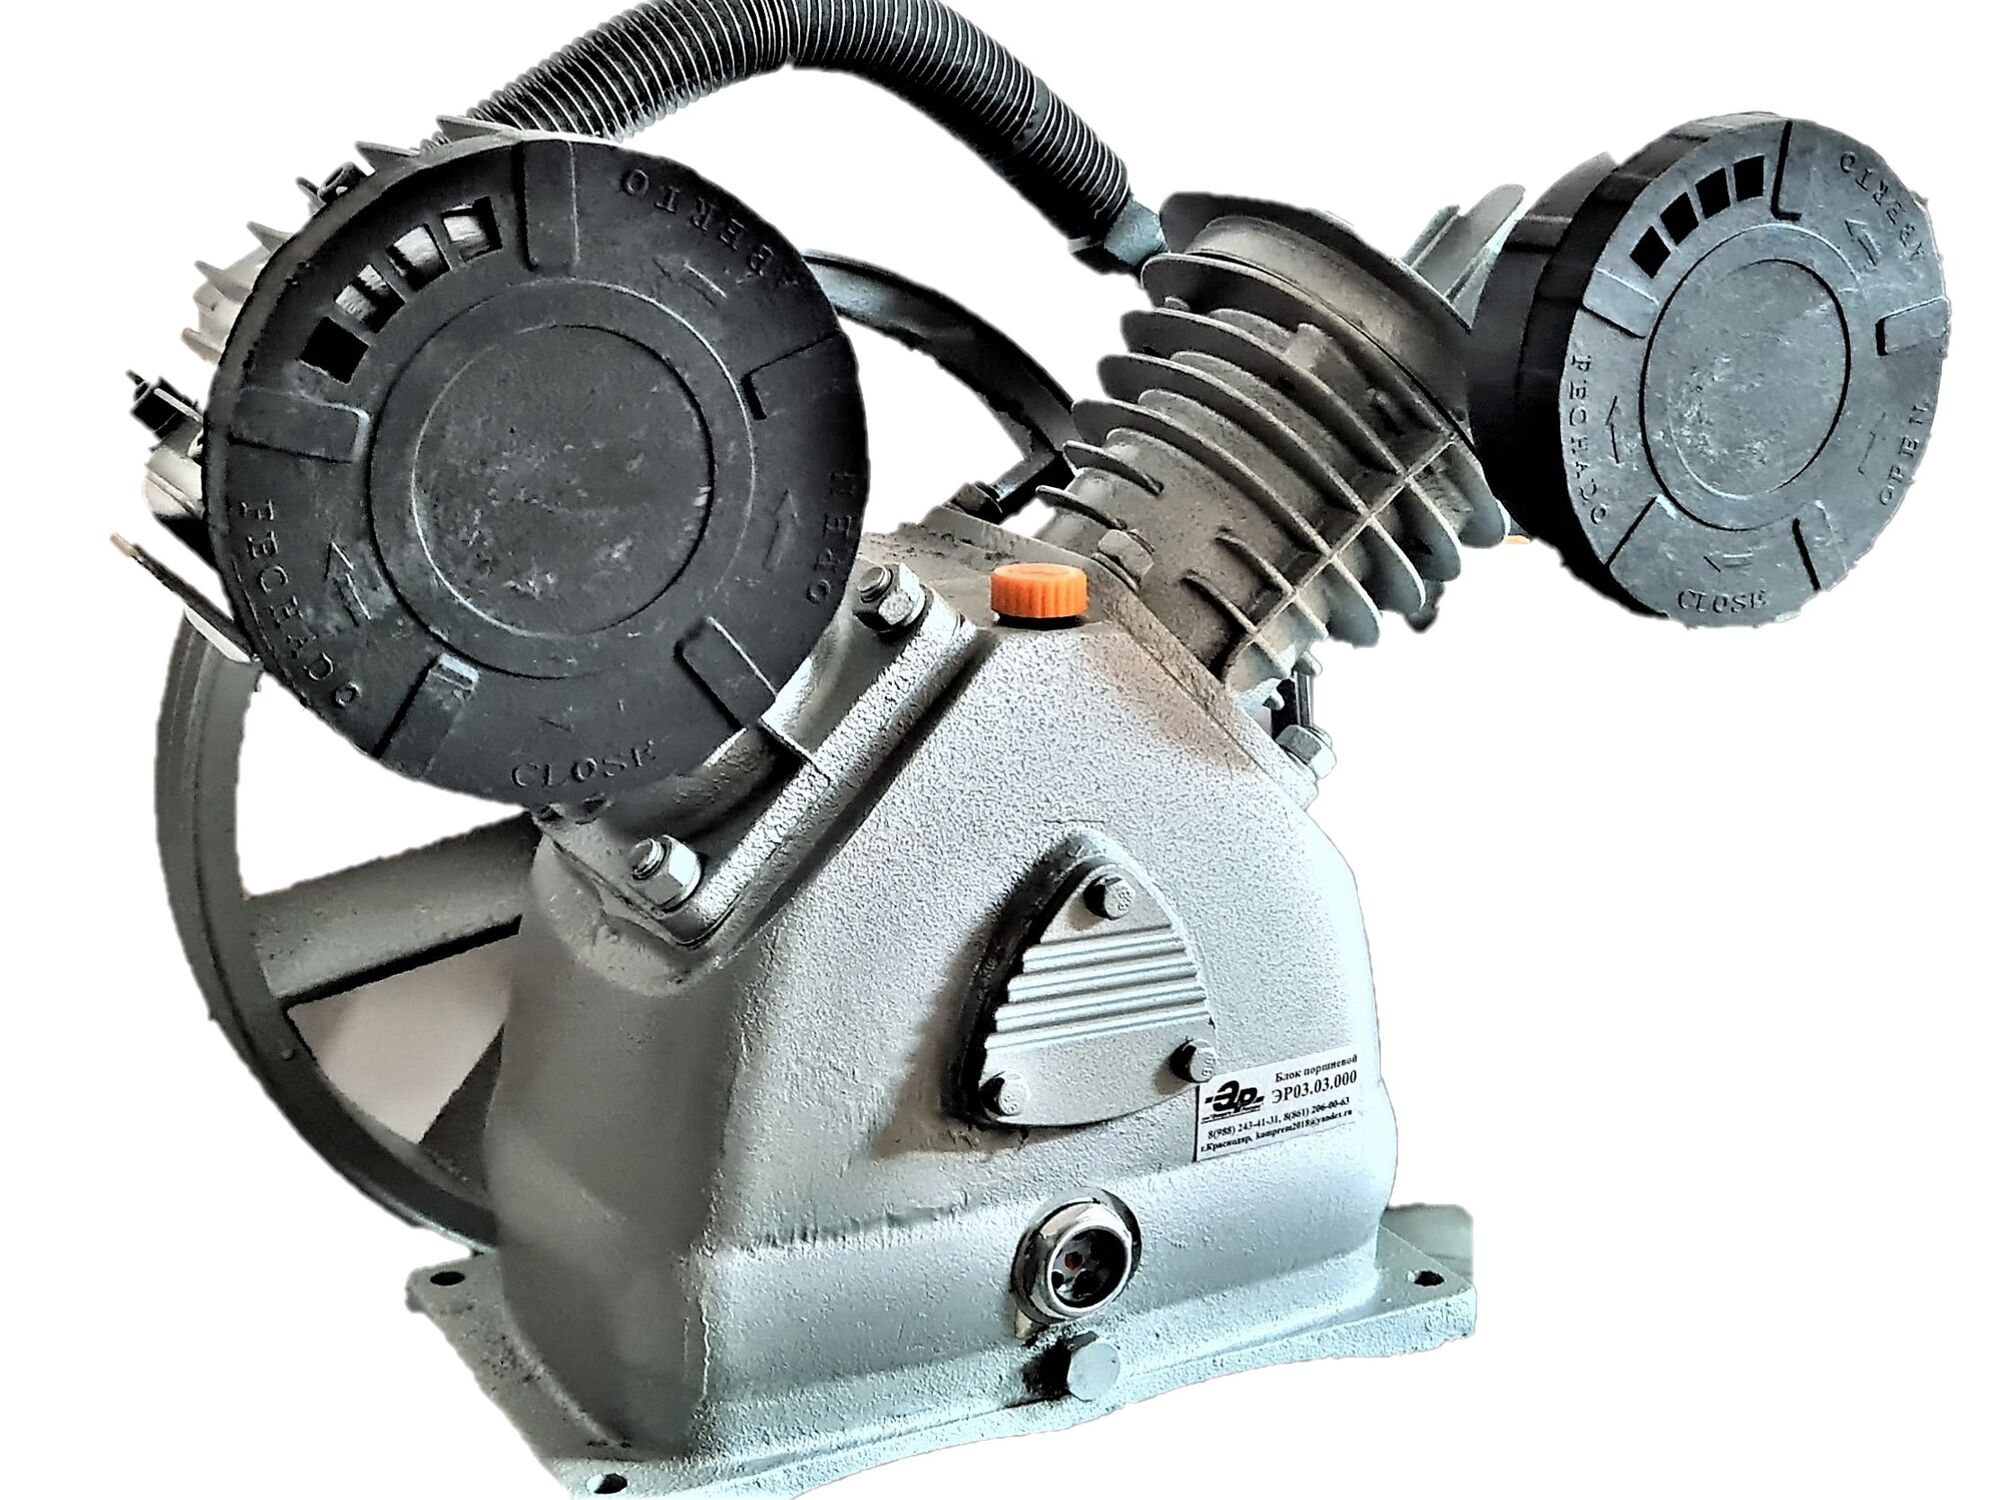 Поршневая головка воздушного компрессора LB-50 производительностью 710 л/мин